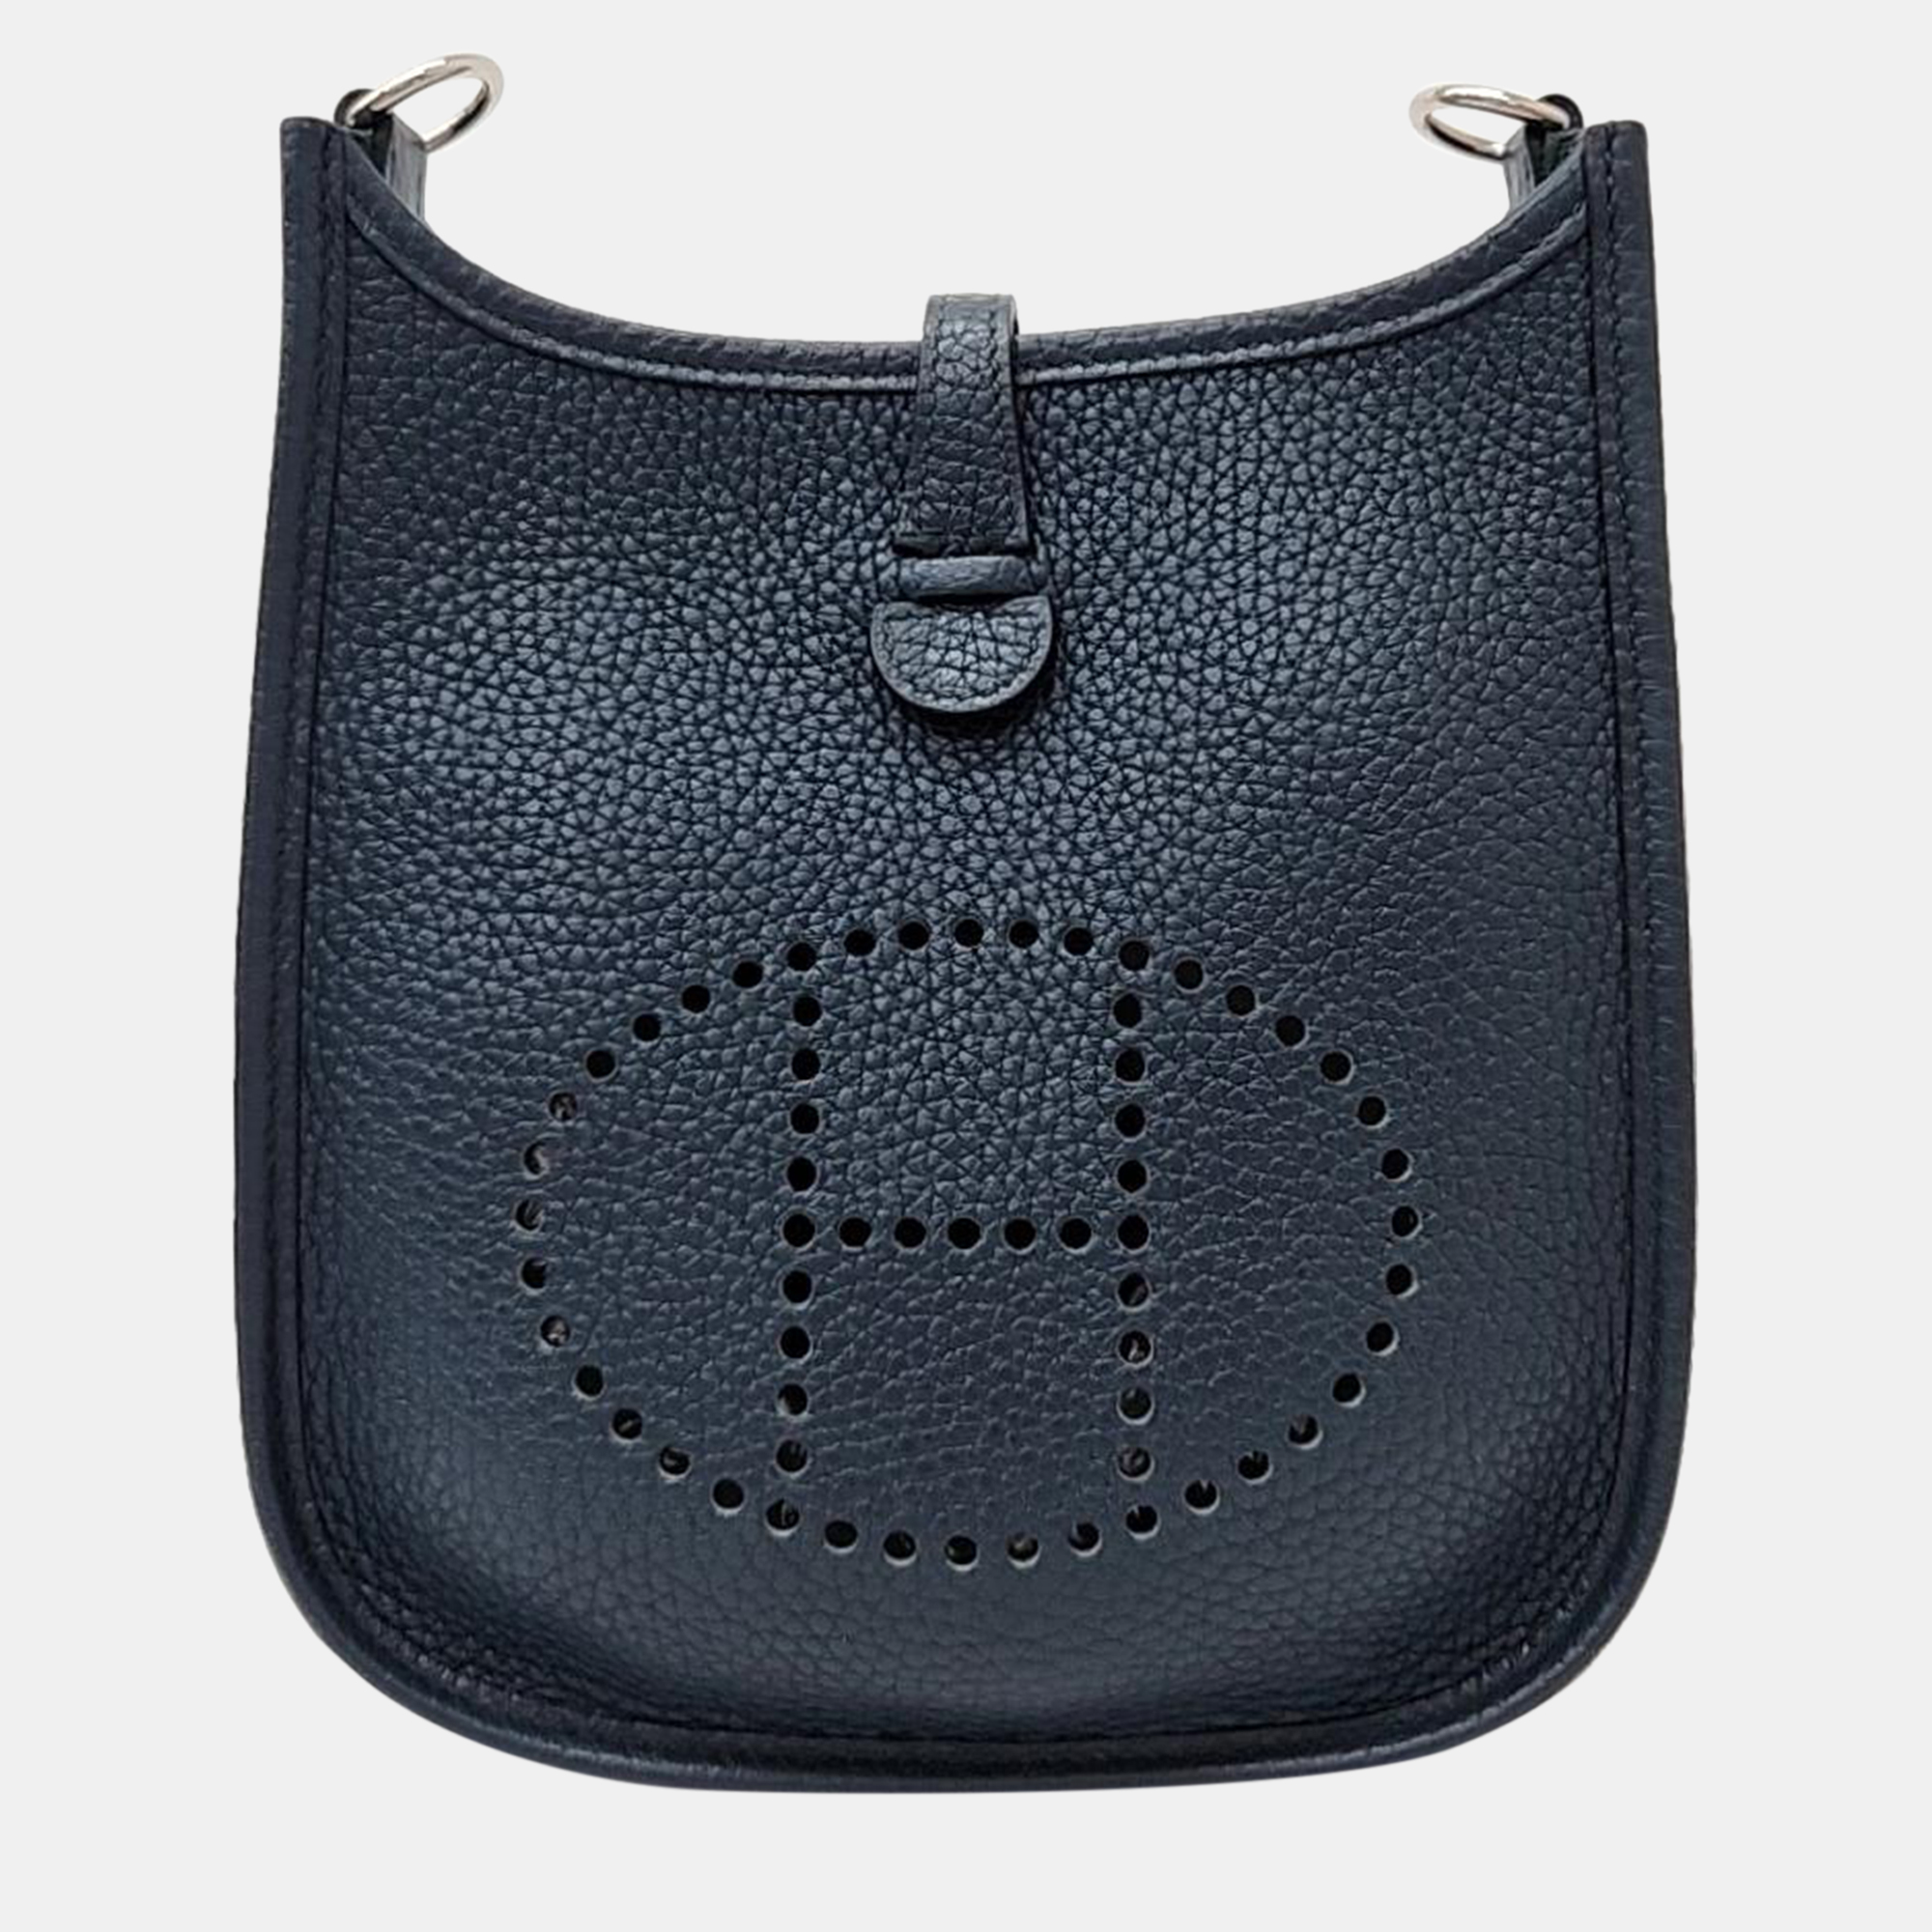 

Hermes Black Leather Evelyn 16 Bag